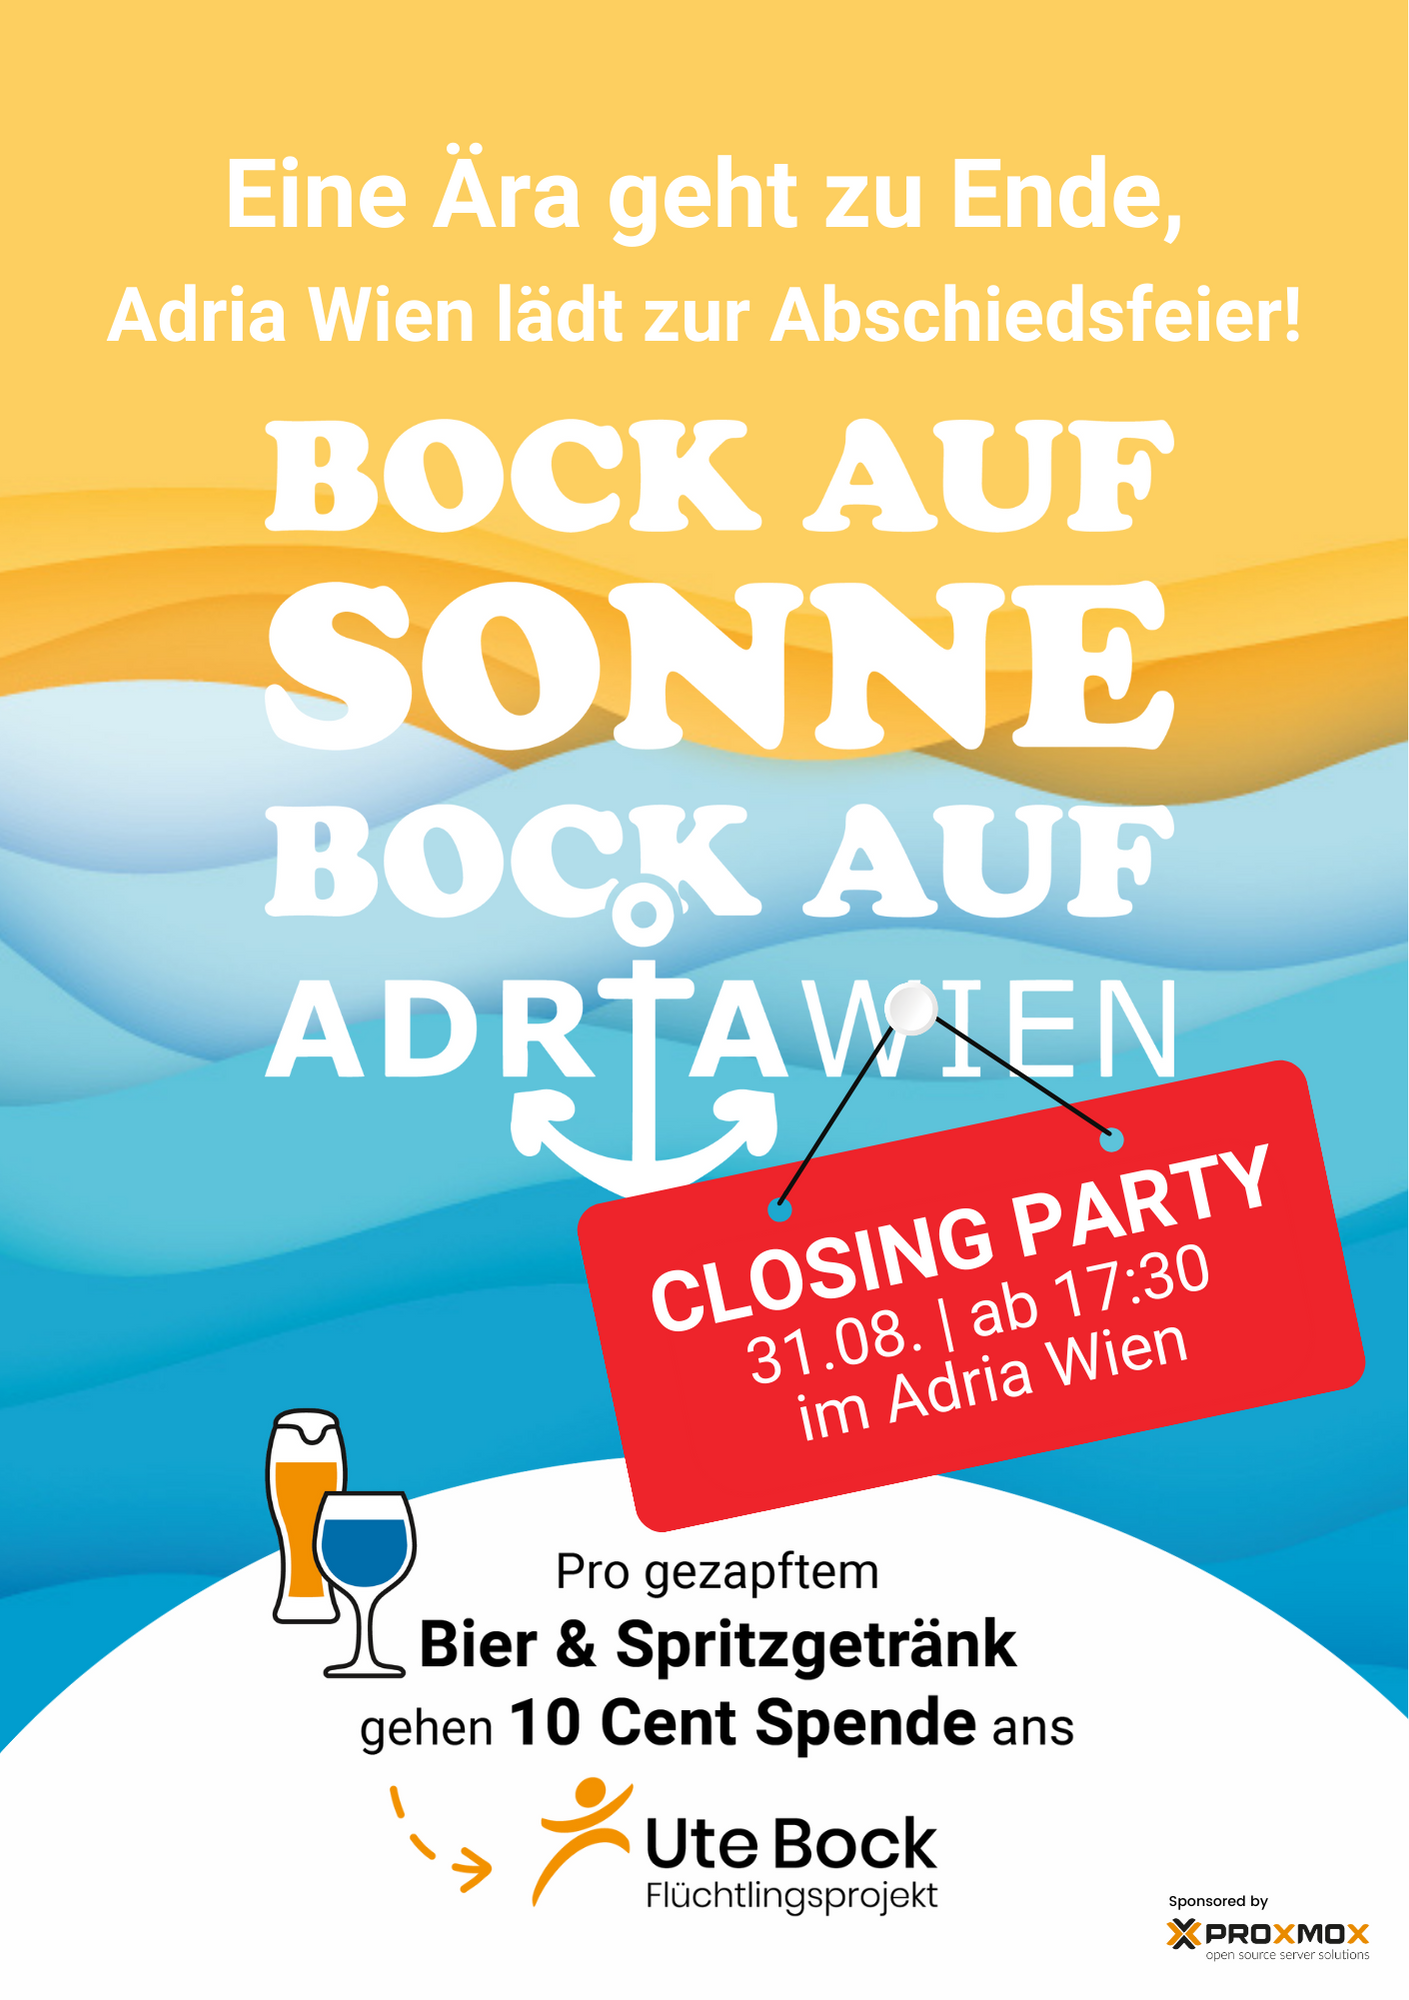 Einladung: Closing Party vom Adria Wien und Bock auf Sonne